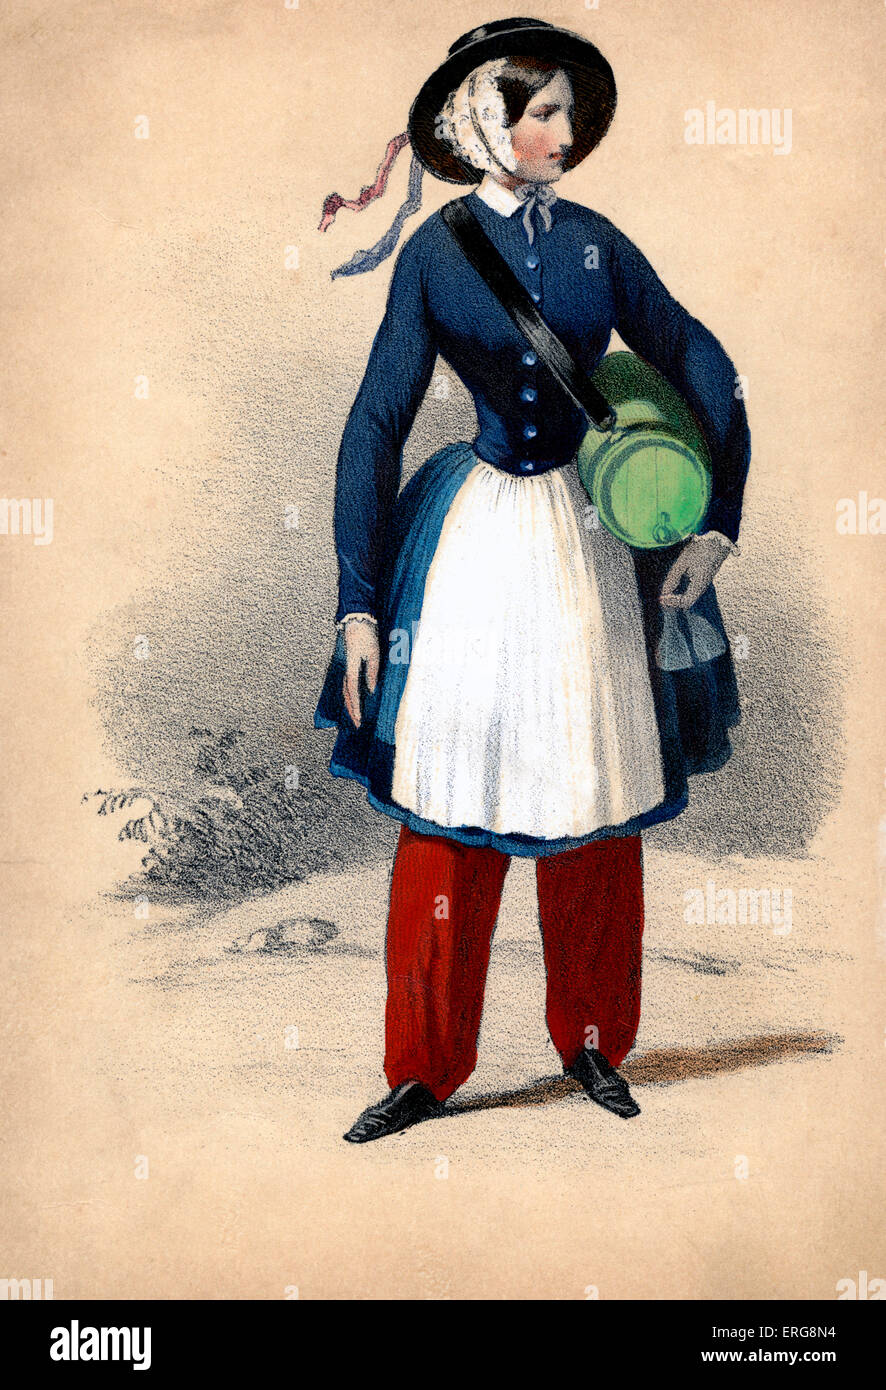 Vivandière: siglo xix francesa adjunta a regimientos militares, vendiendo el vino a las tropas y el trabajo en cantinas (también Foto de stock